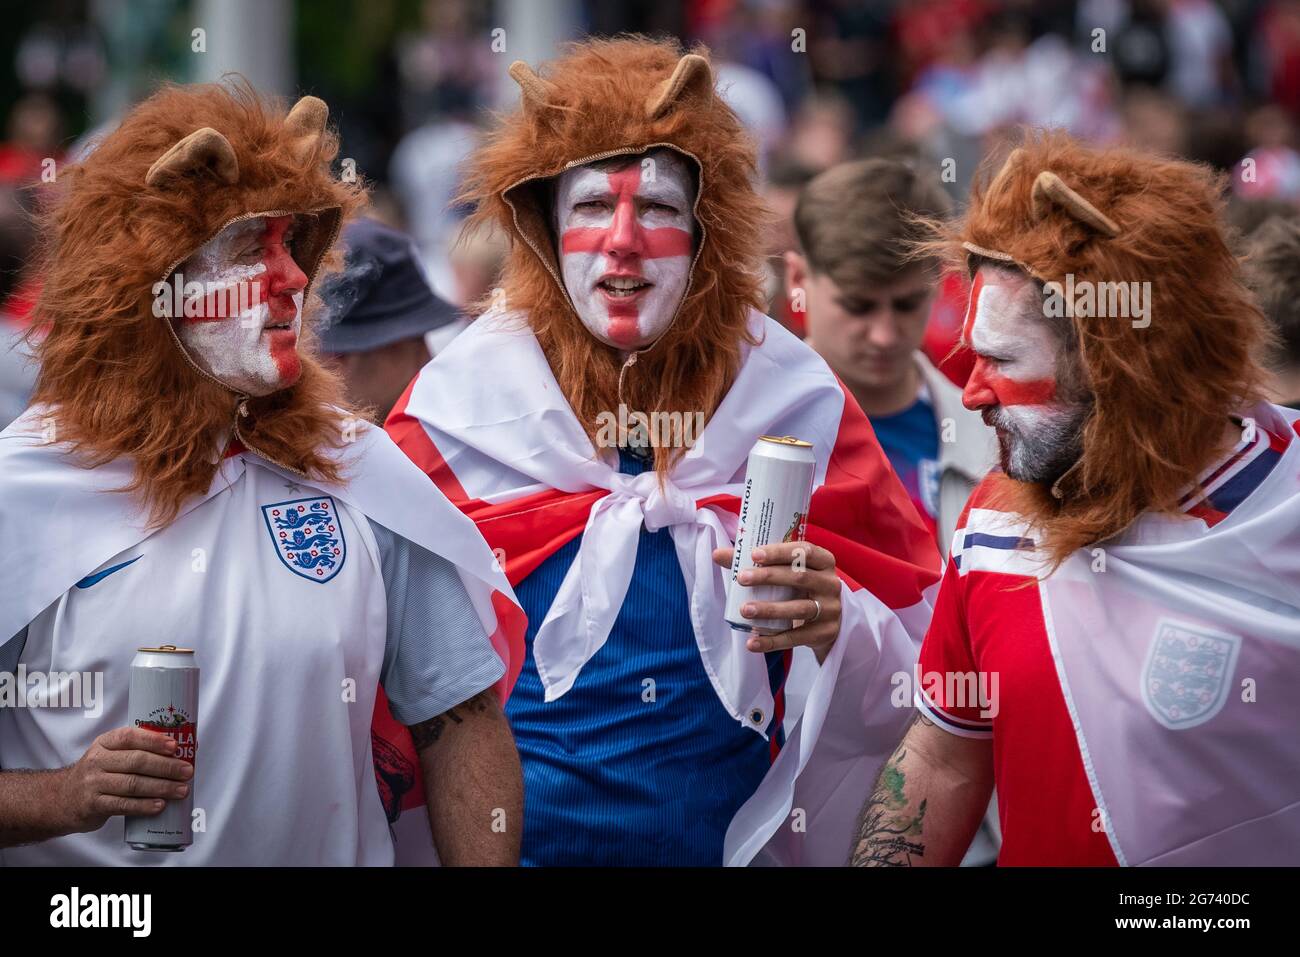 EURO 2020: Les fans arrivent à Wembley dans une ambiance festive avant le match de demi-finale Angleterre contre Danemark de ce soir. Londres, Royaume-Uni. Banque D'Images